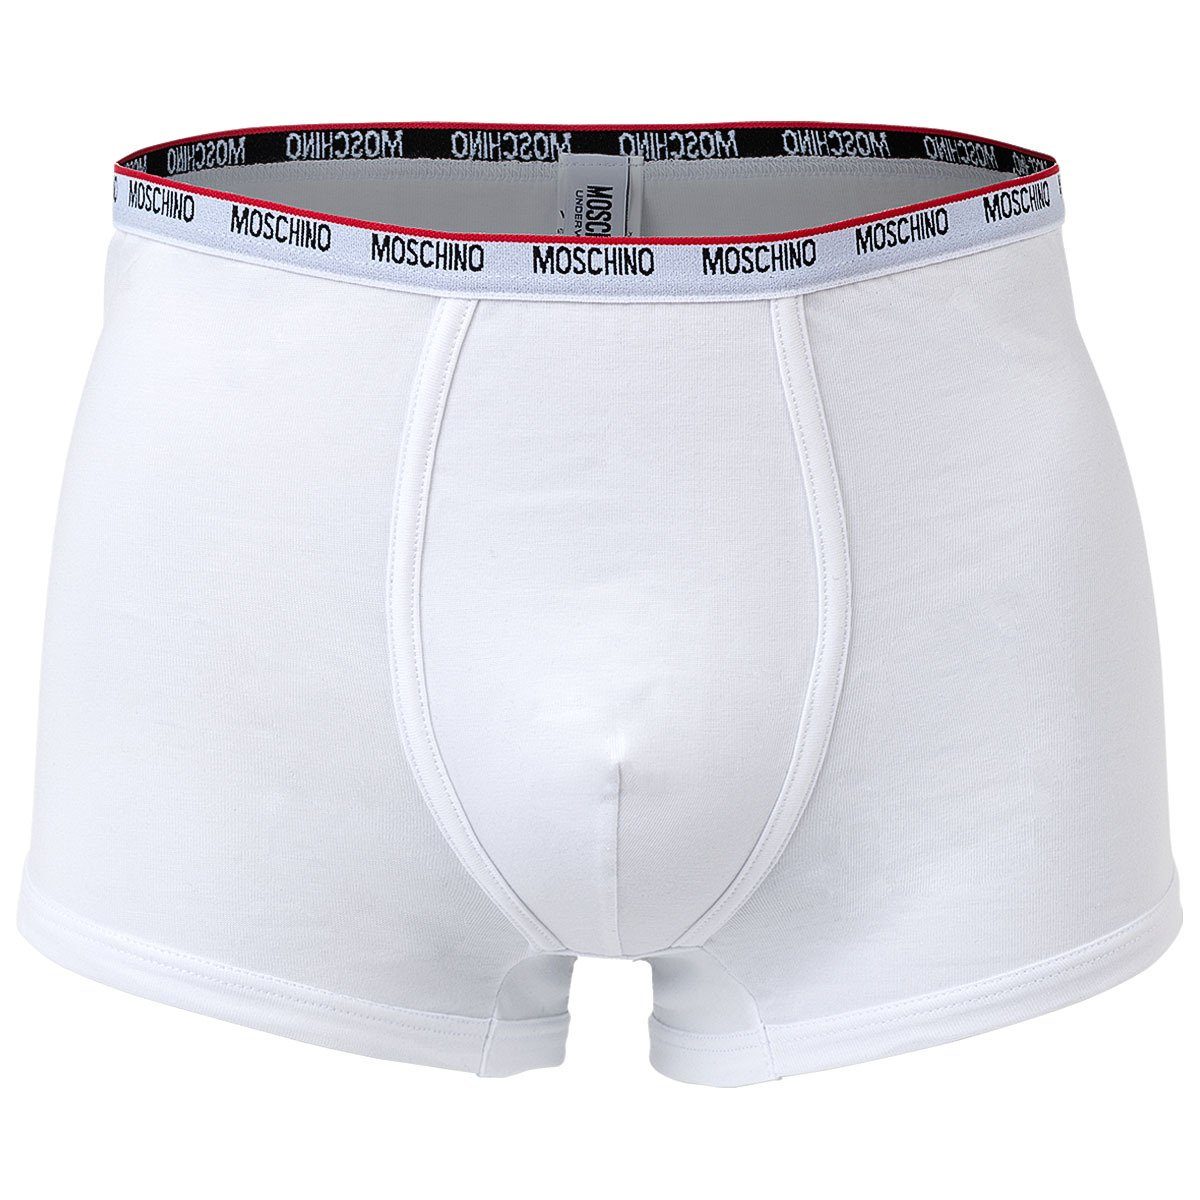 Moschino Boxer - Trunks, Unterhose, 2er Weiß Cotton Herren Shorts Pack